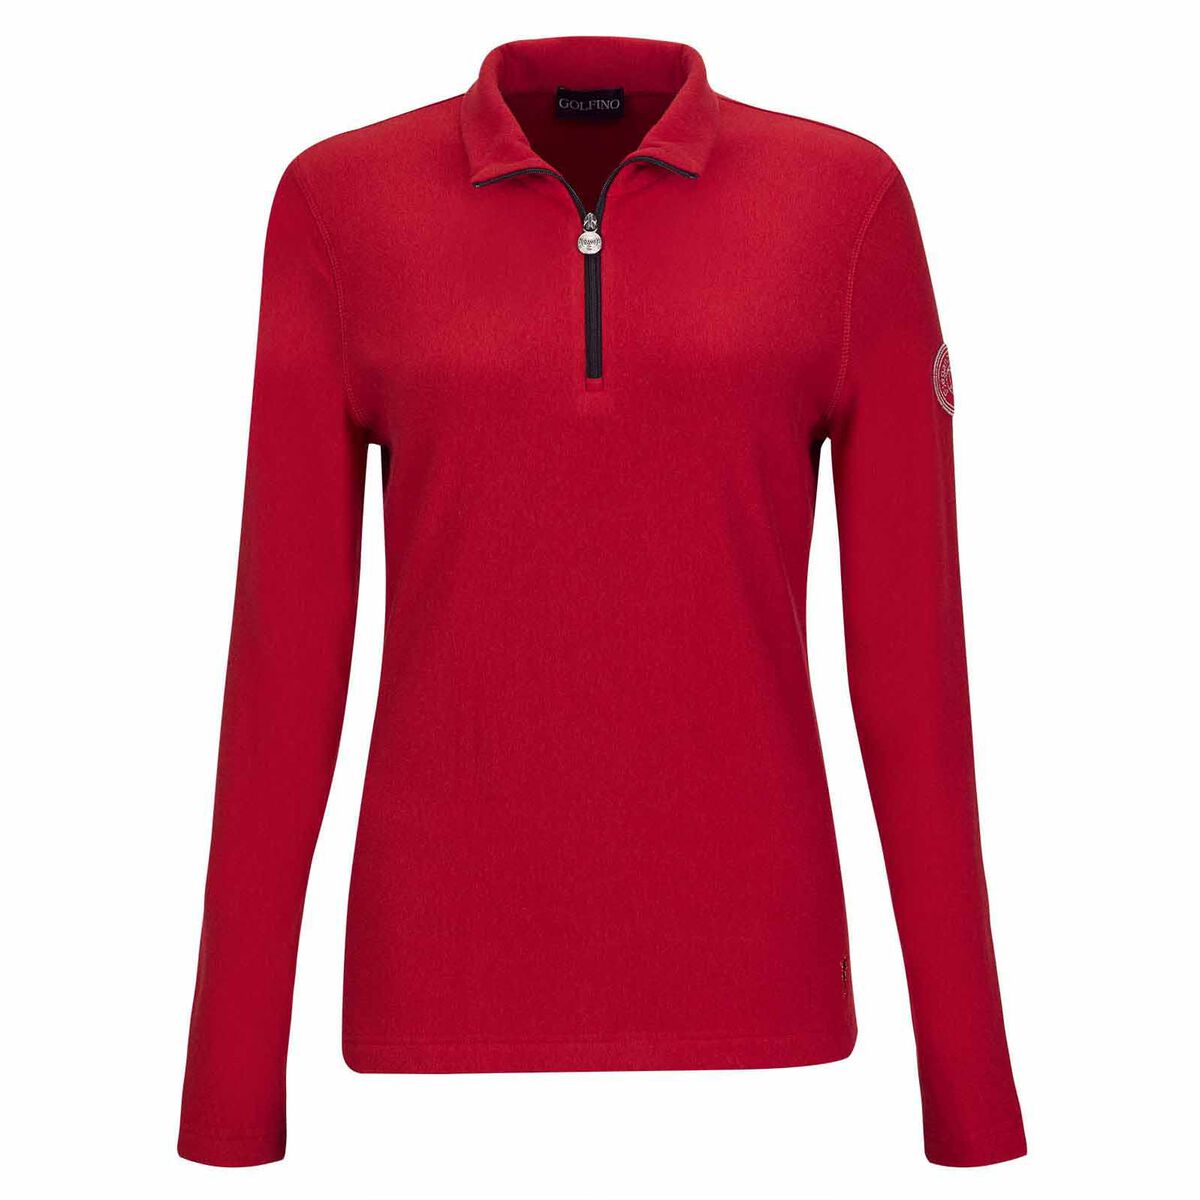 Vêtement intermédiaire GOLFINO Alessia pour femmes, femme, 10, Rouge | Online Golf